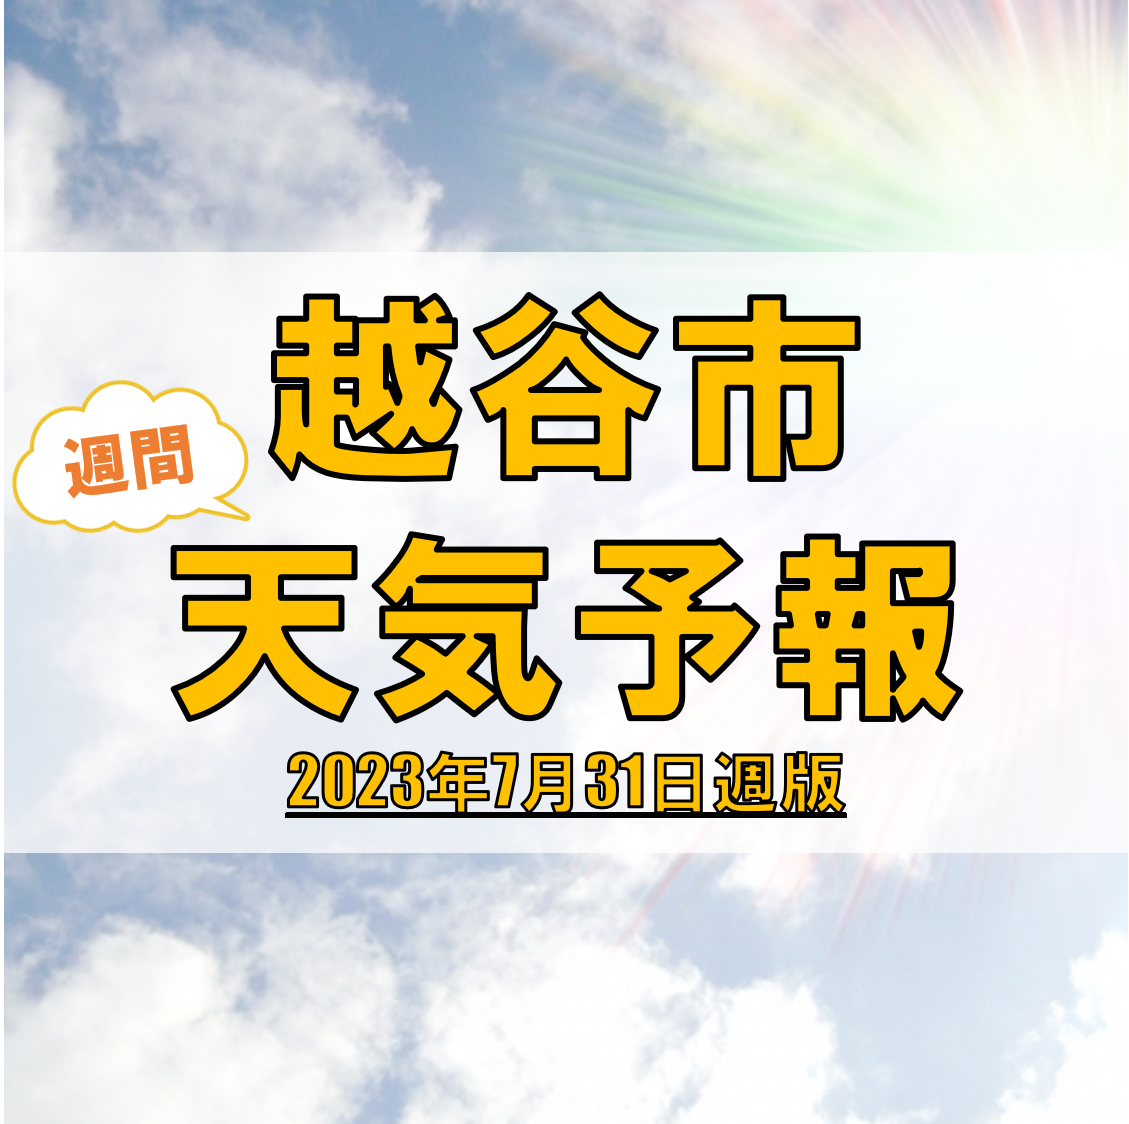 越谷市の天気 週間予報【2023年7月31日週】